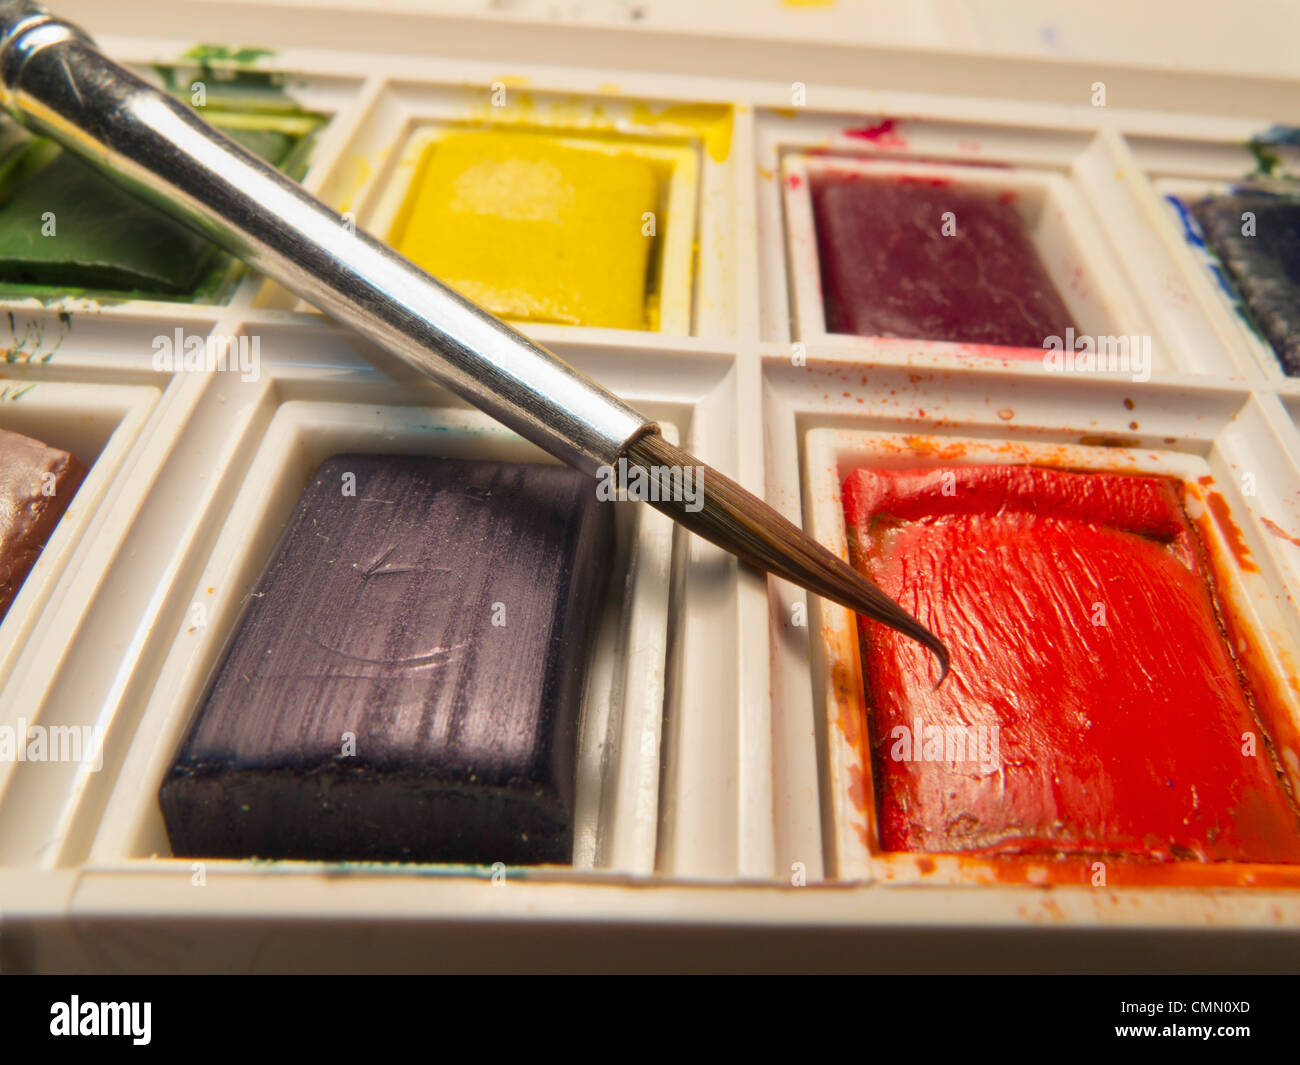 Primo piano della spazzola in bilico sopra compressa di rosso il colore dell'acqua in una scatola di vernice. Foto Stock